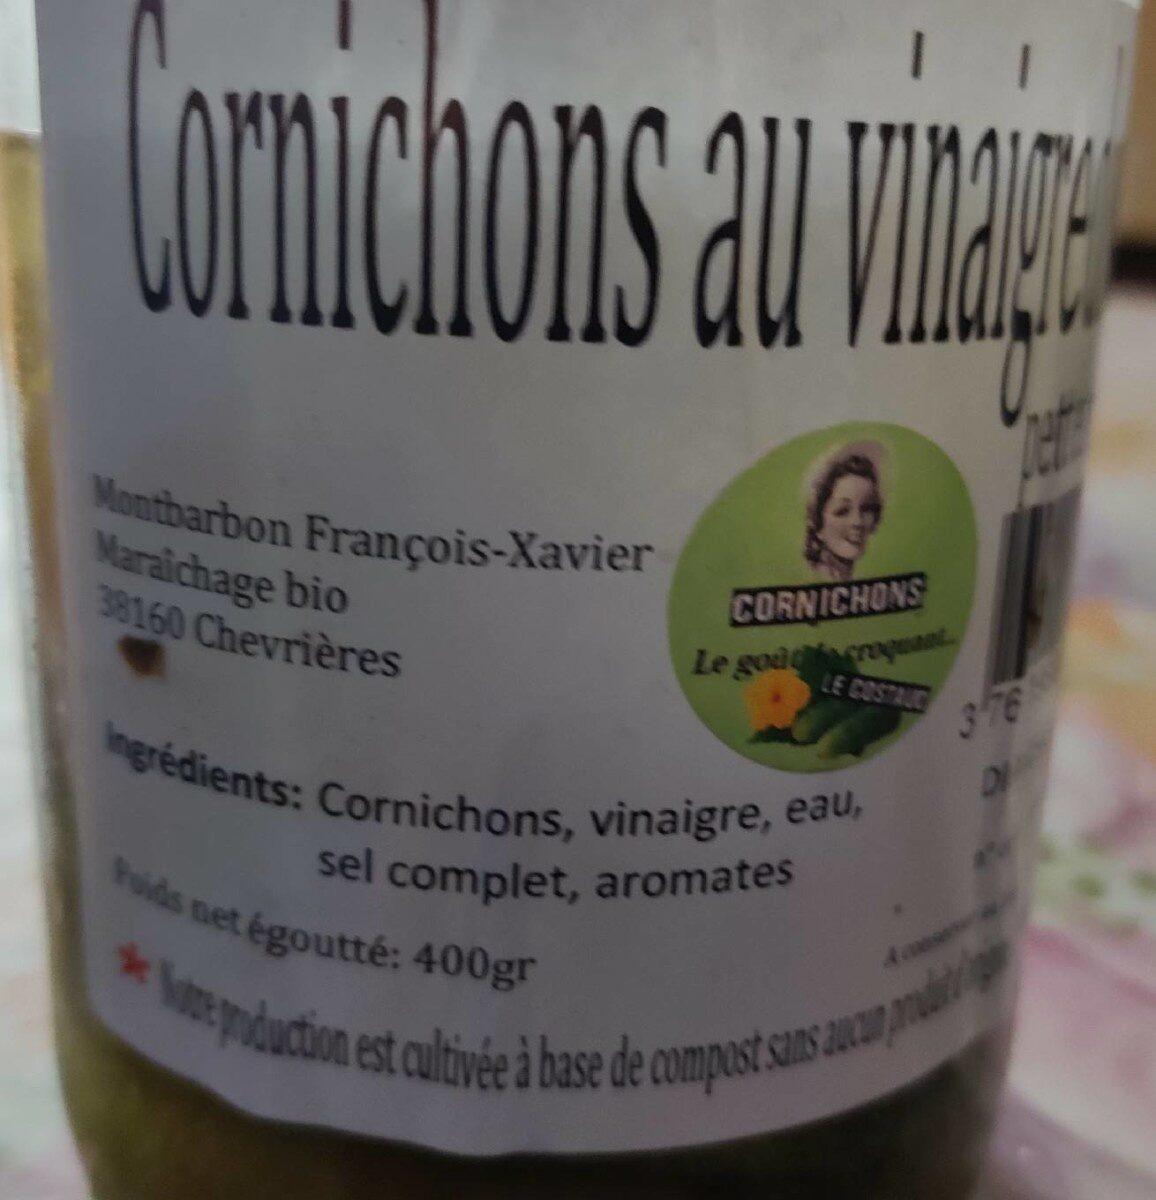 Cornichons au vinaigre doux - Tableau nutritionnel